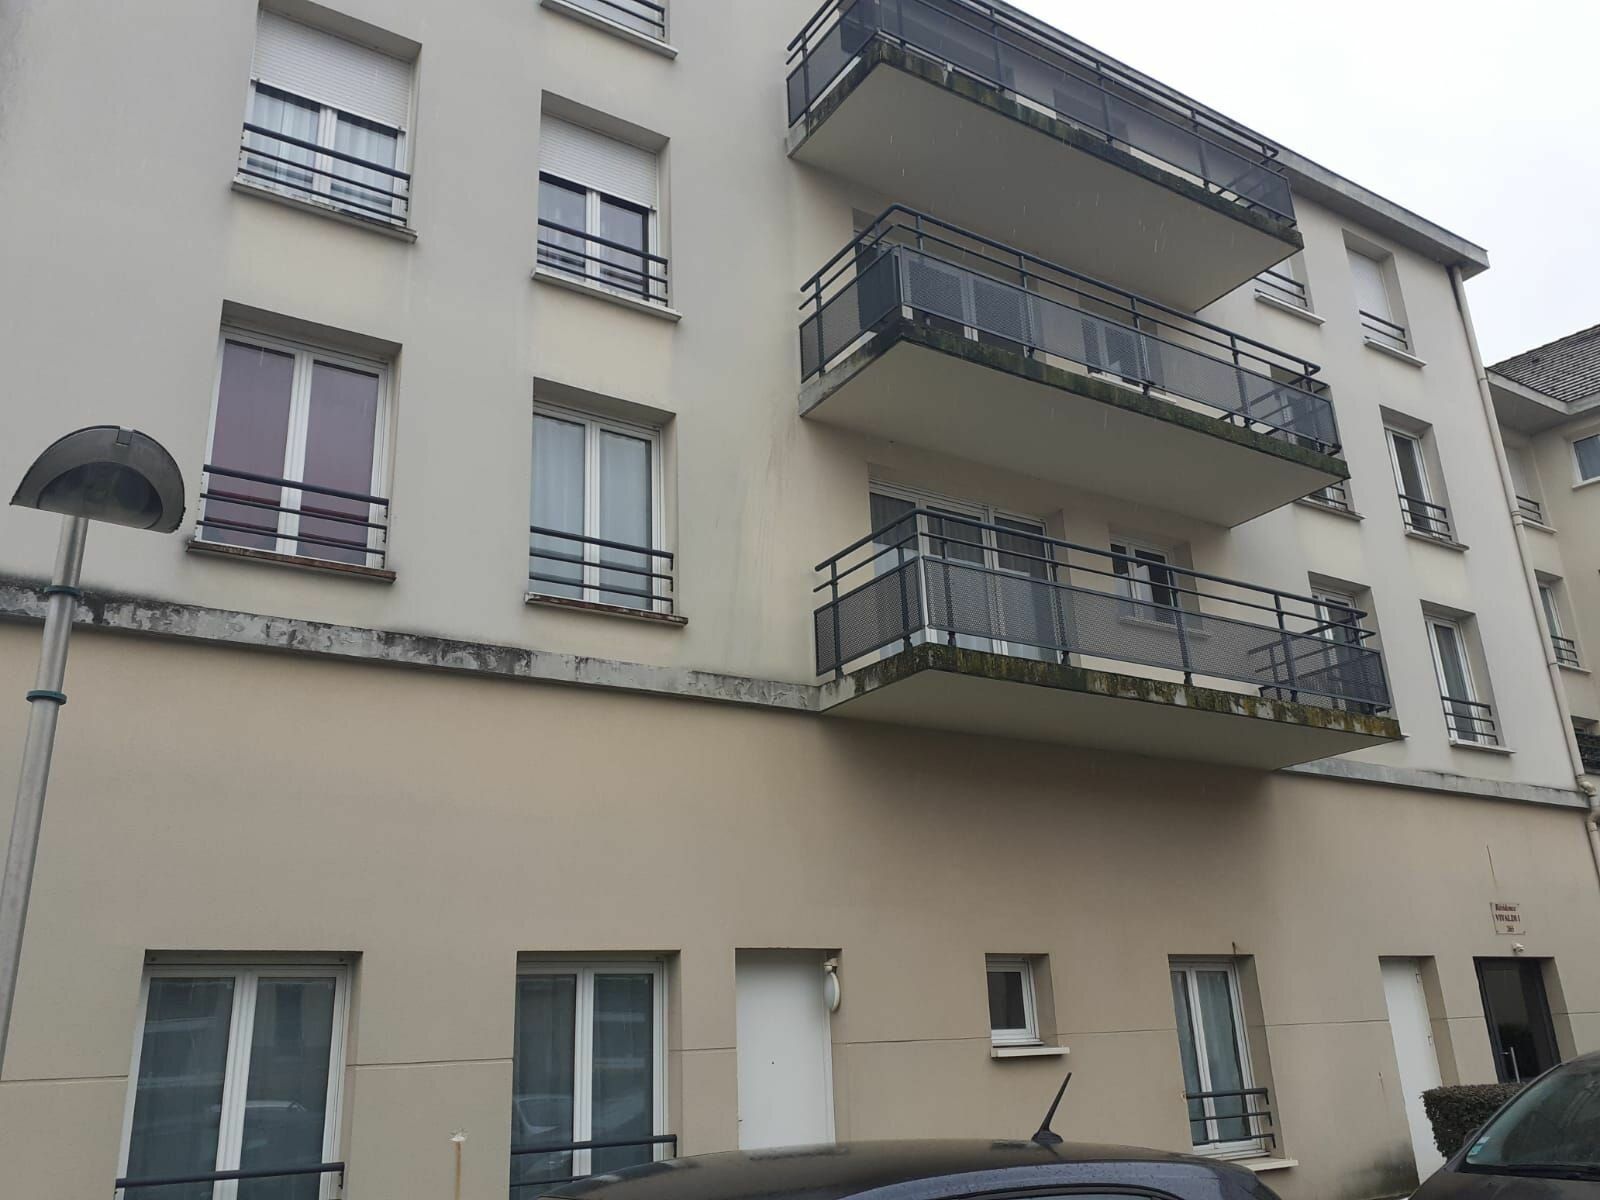 Appartement à louer 2 47.41m2 à Margny-lès-Compiègne vignette-10